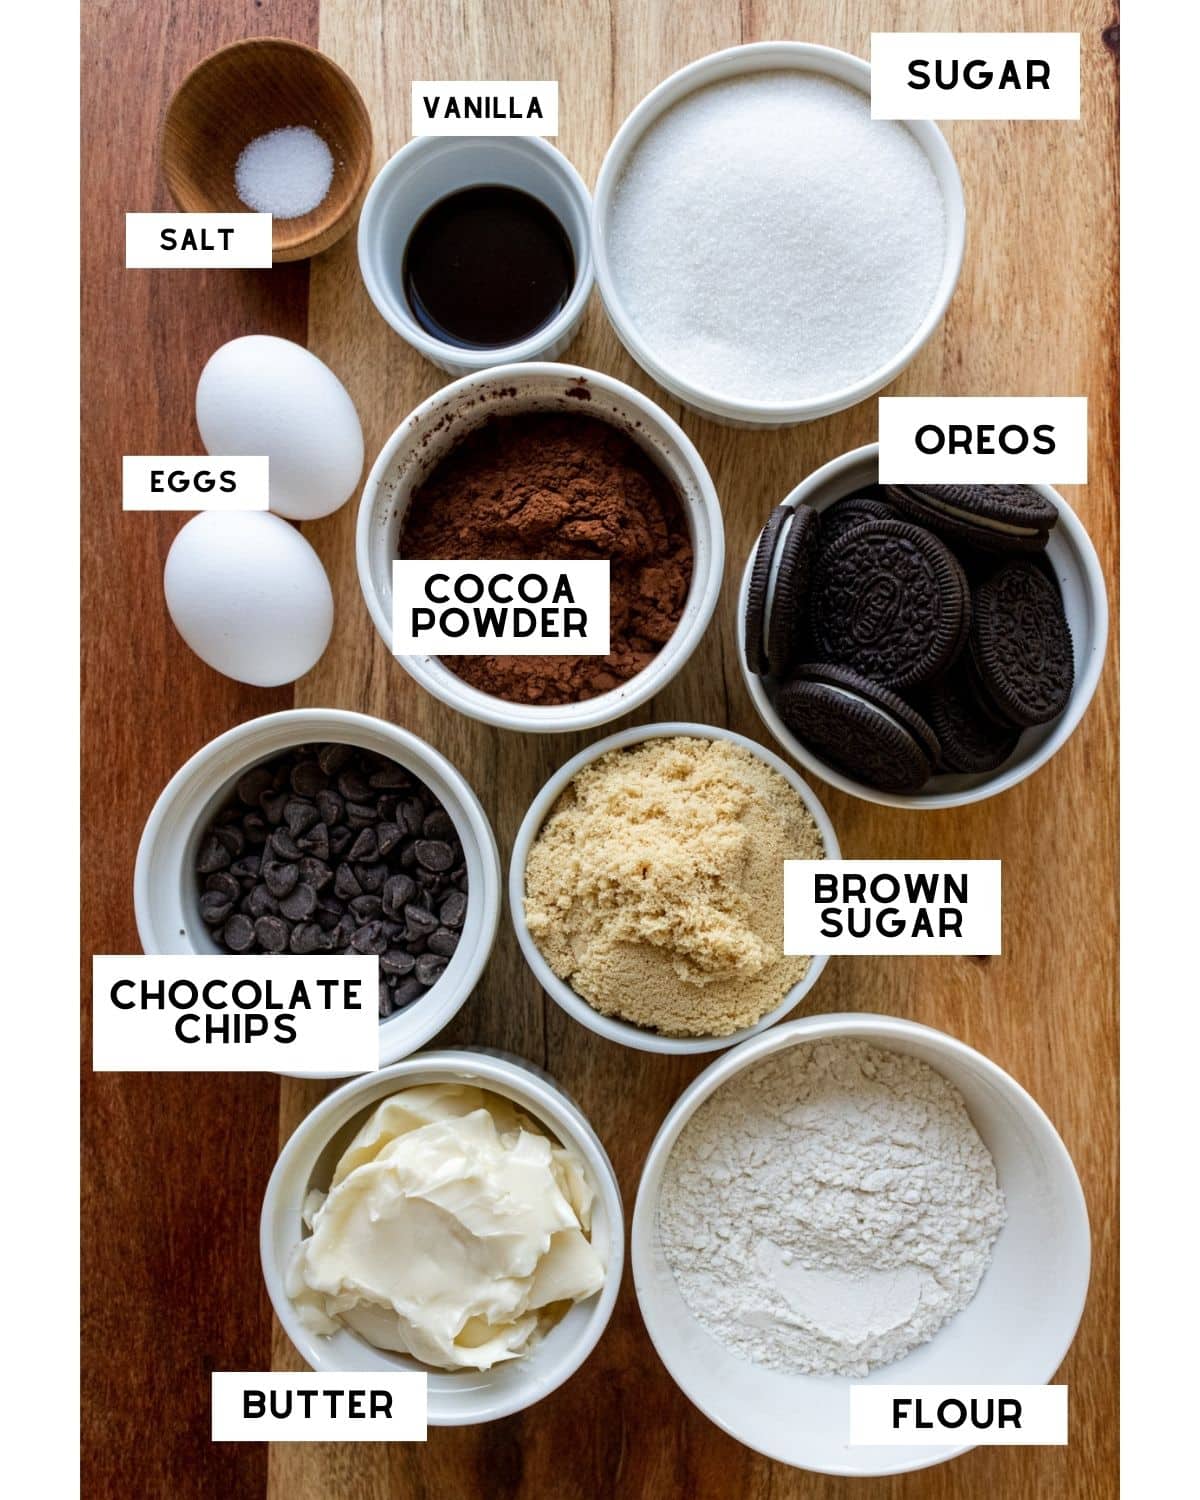 Oreo brownies ingredients in clear bowls